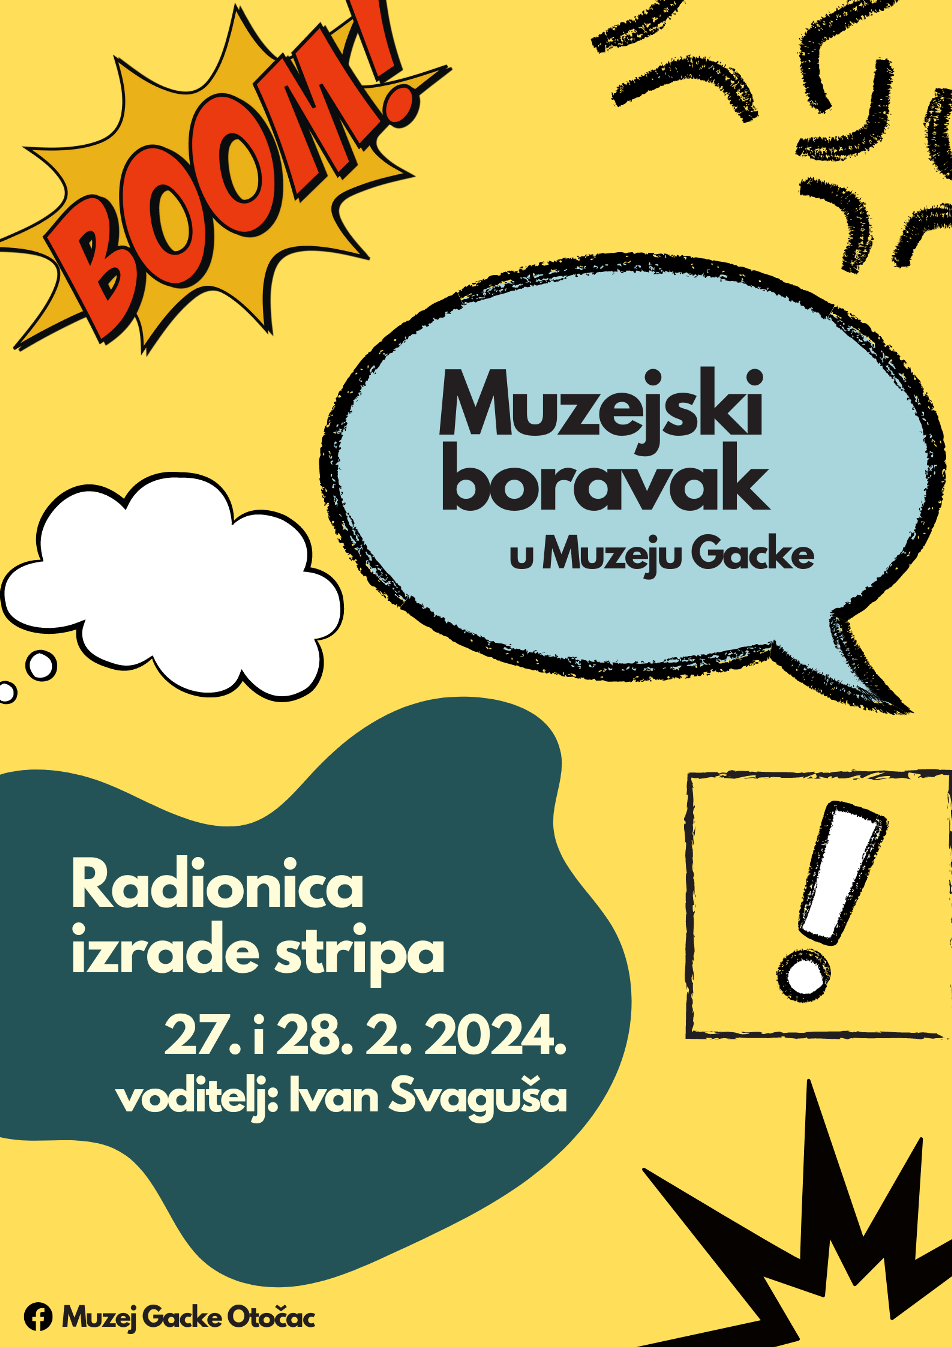 Muzejski boravak / Radionica izrade stripa